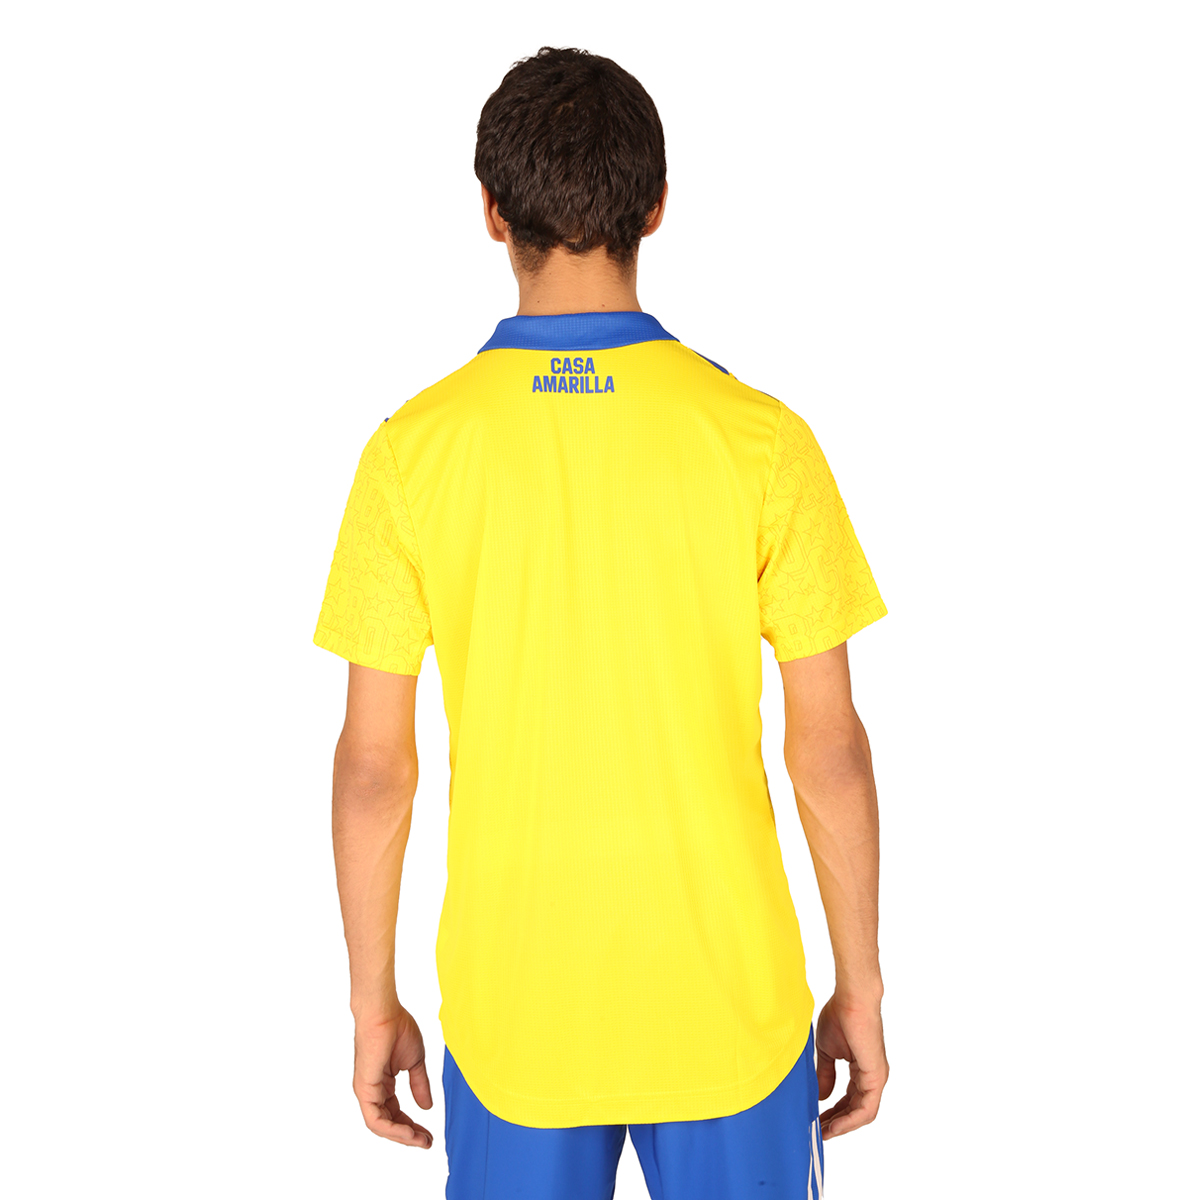 Camiseta adidas Boca Juniors Oficial alternativa,  image number null